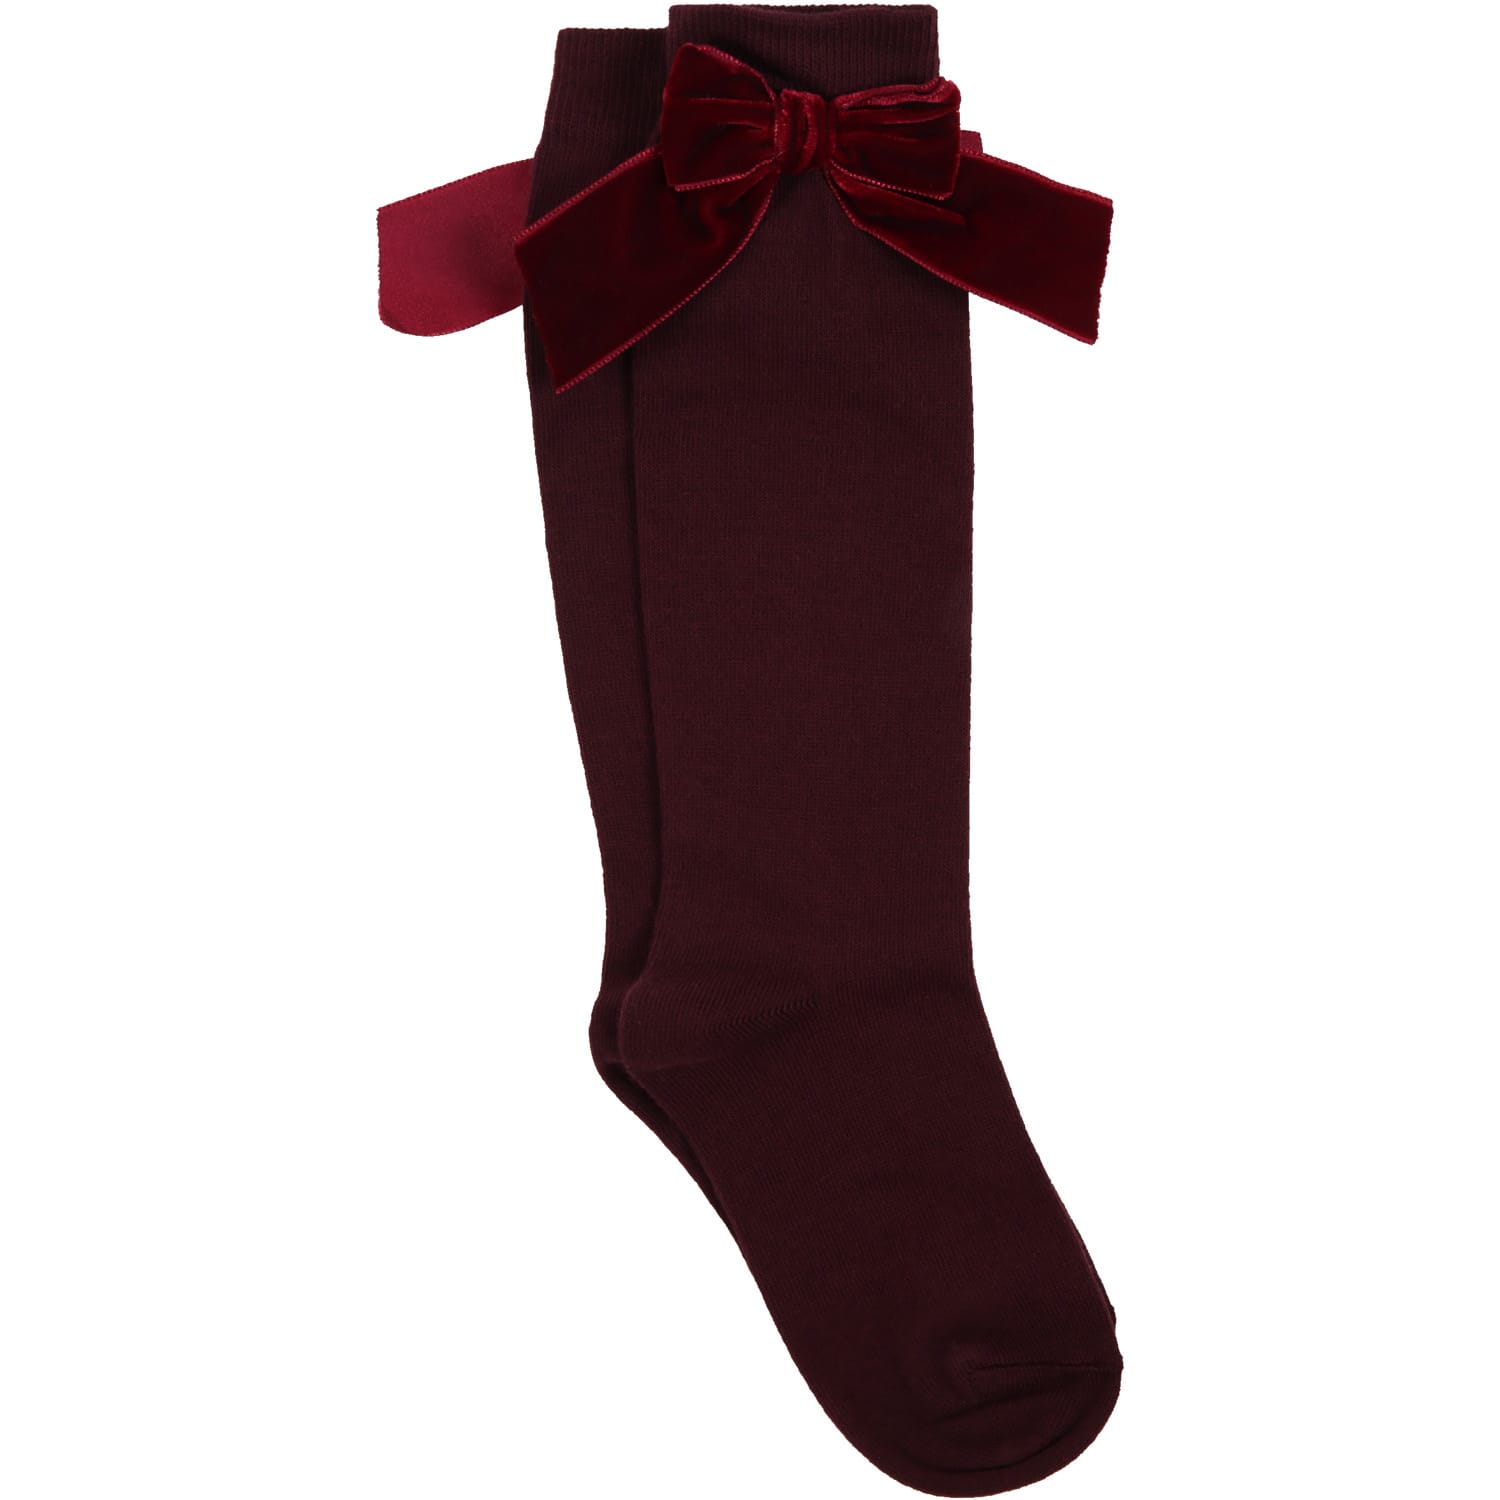 Story loris Bordeaux Socks For Girl